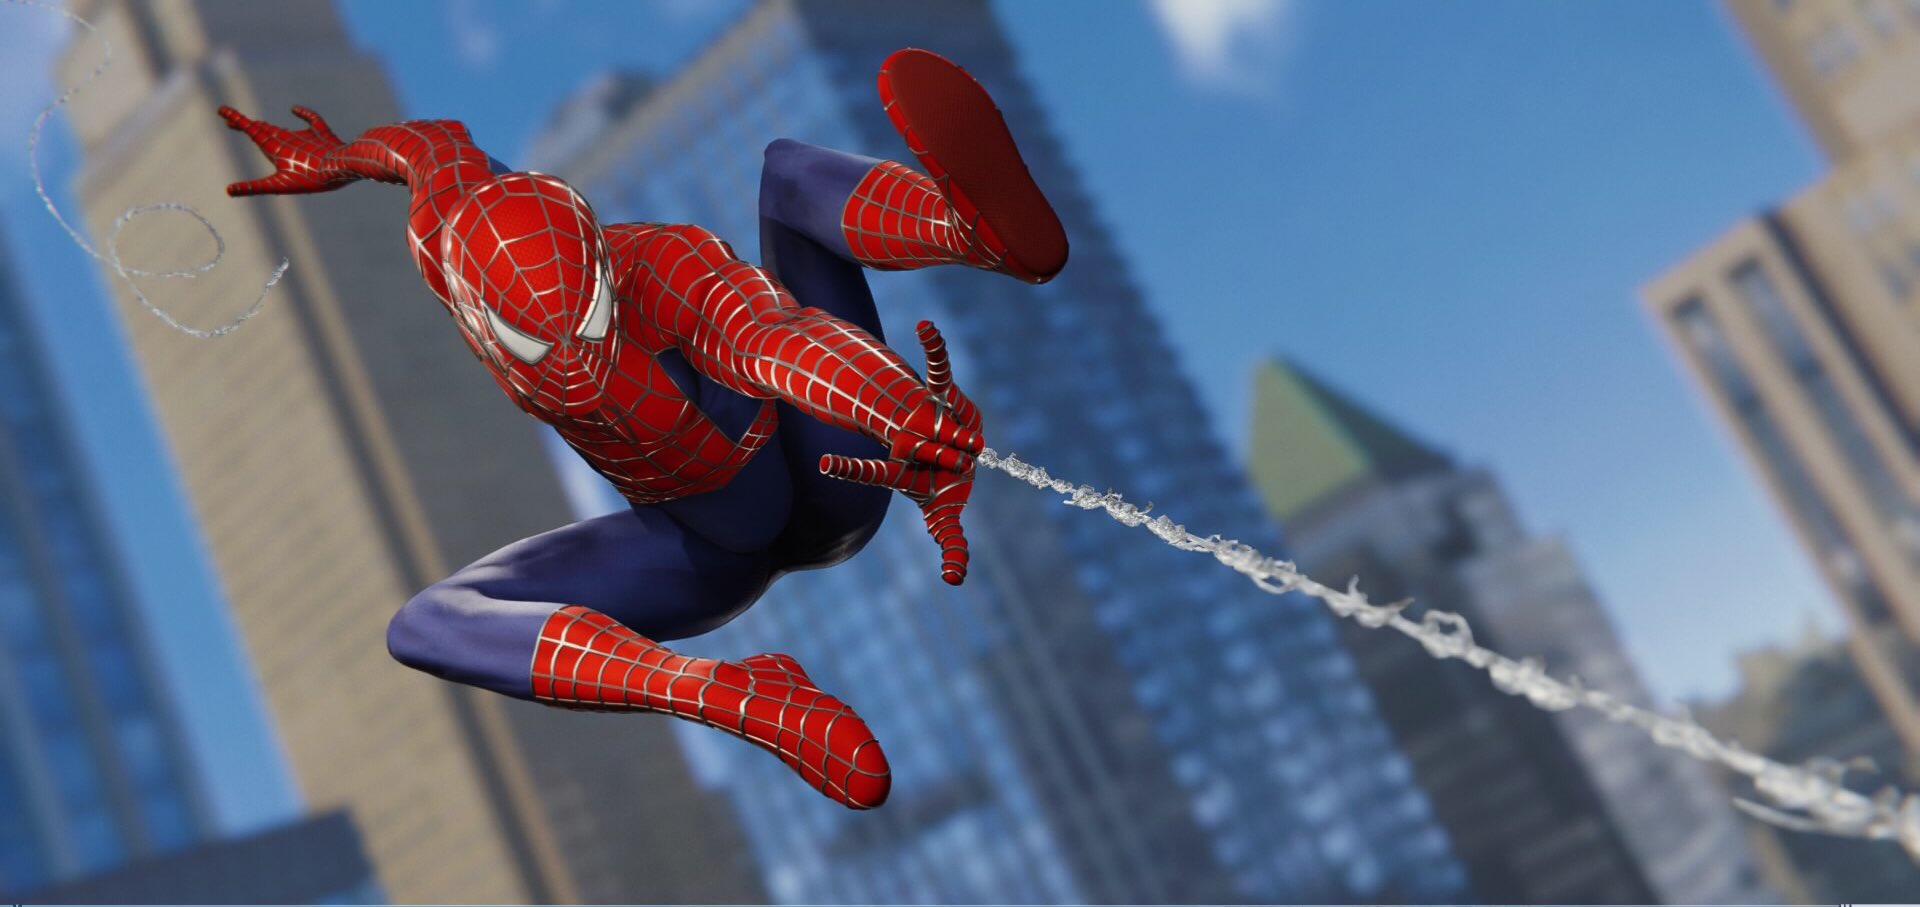 Игра человека паука летать. Spider man ps4 персонажи. Spider man ps4 полёты. Spider man ps4 полёты на паутине. Человек паук способности героя.